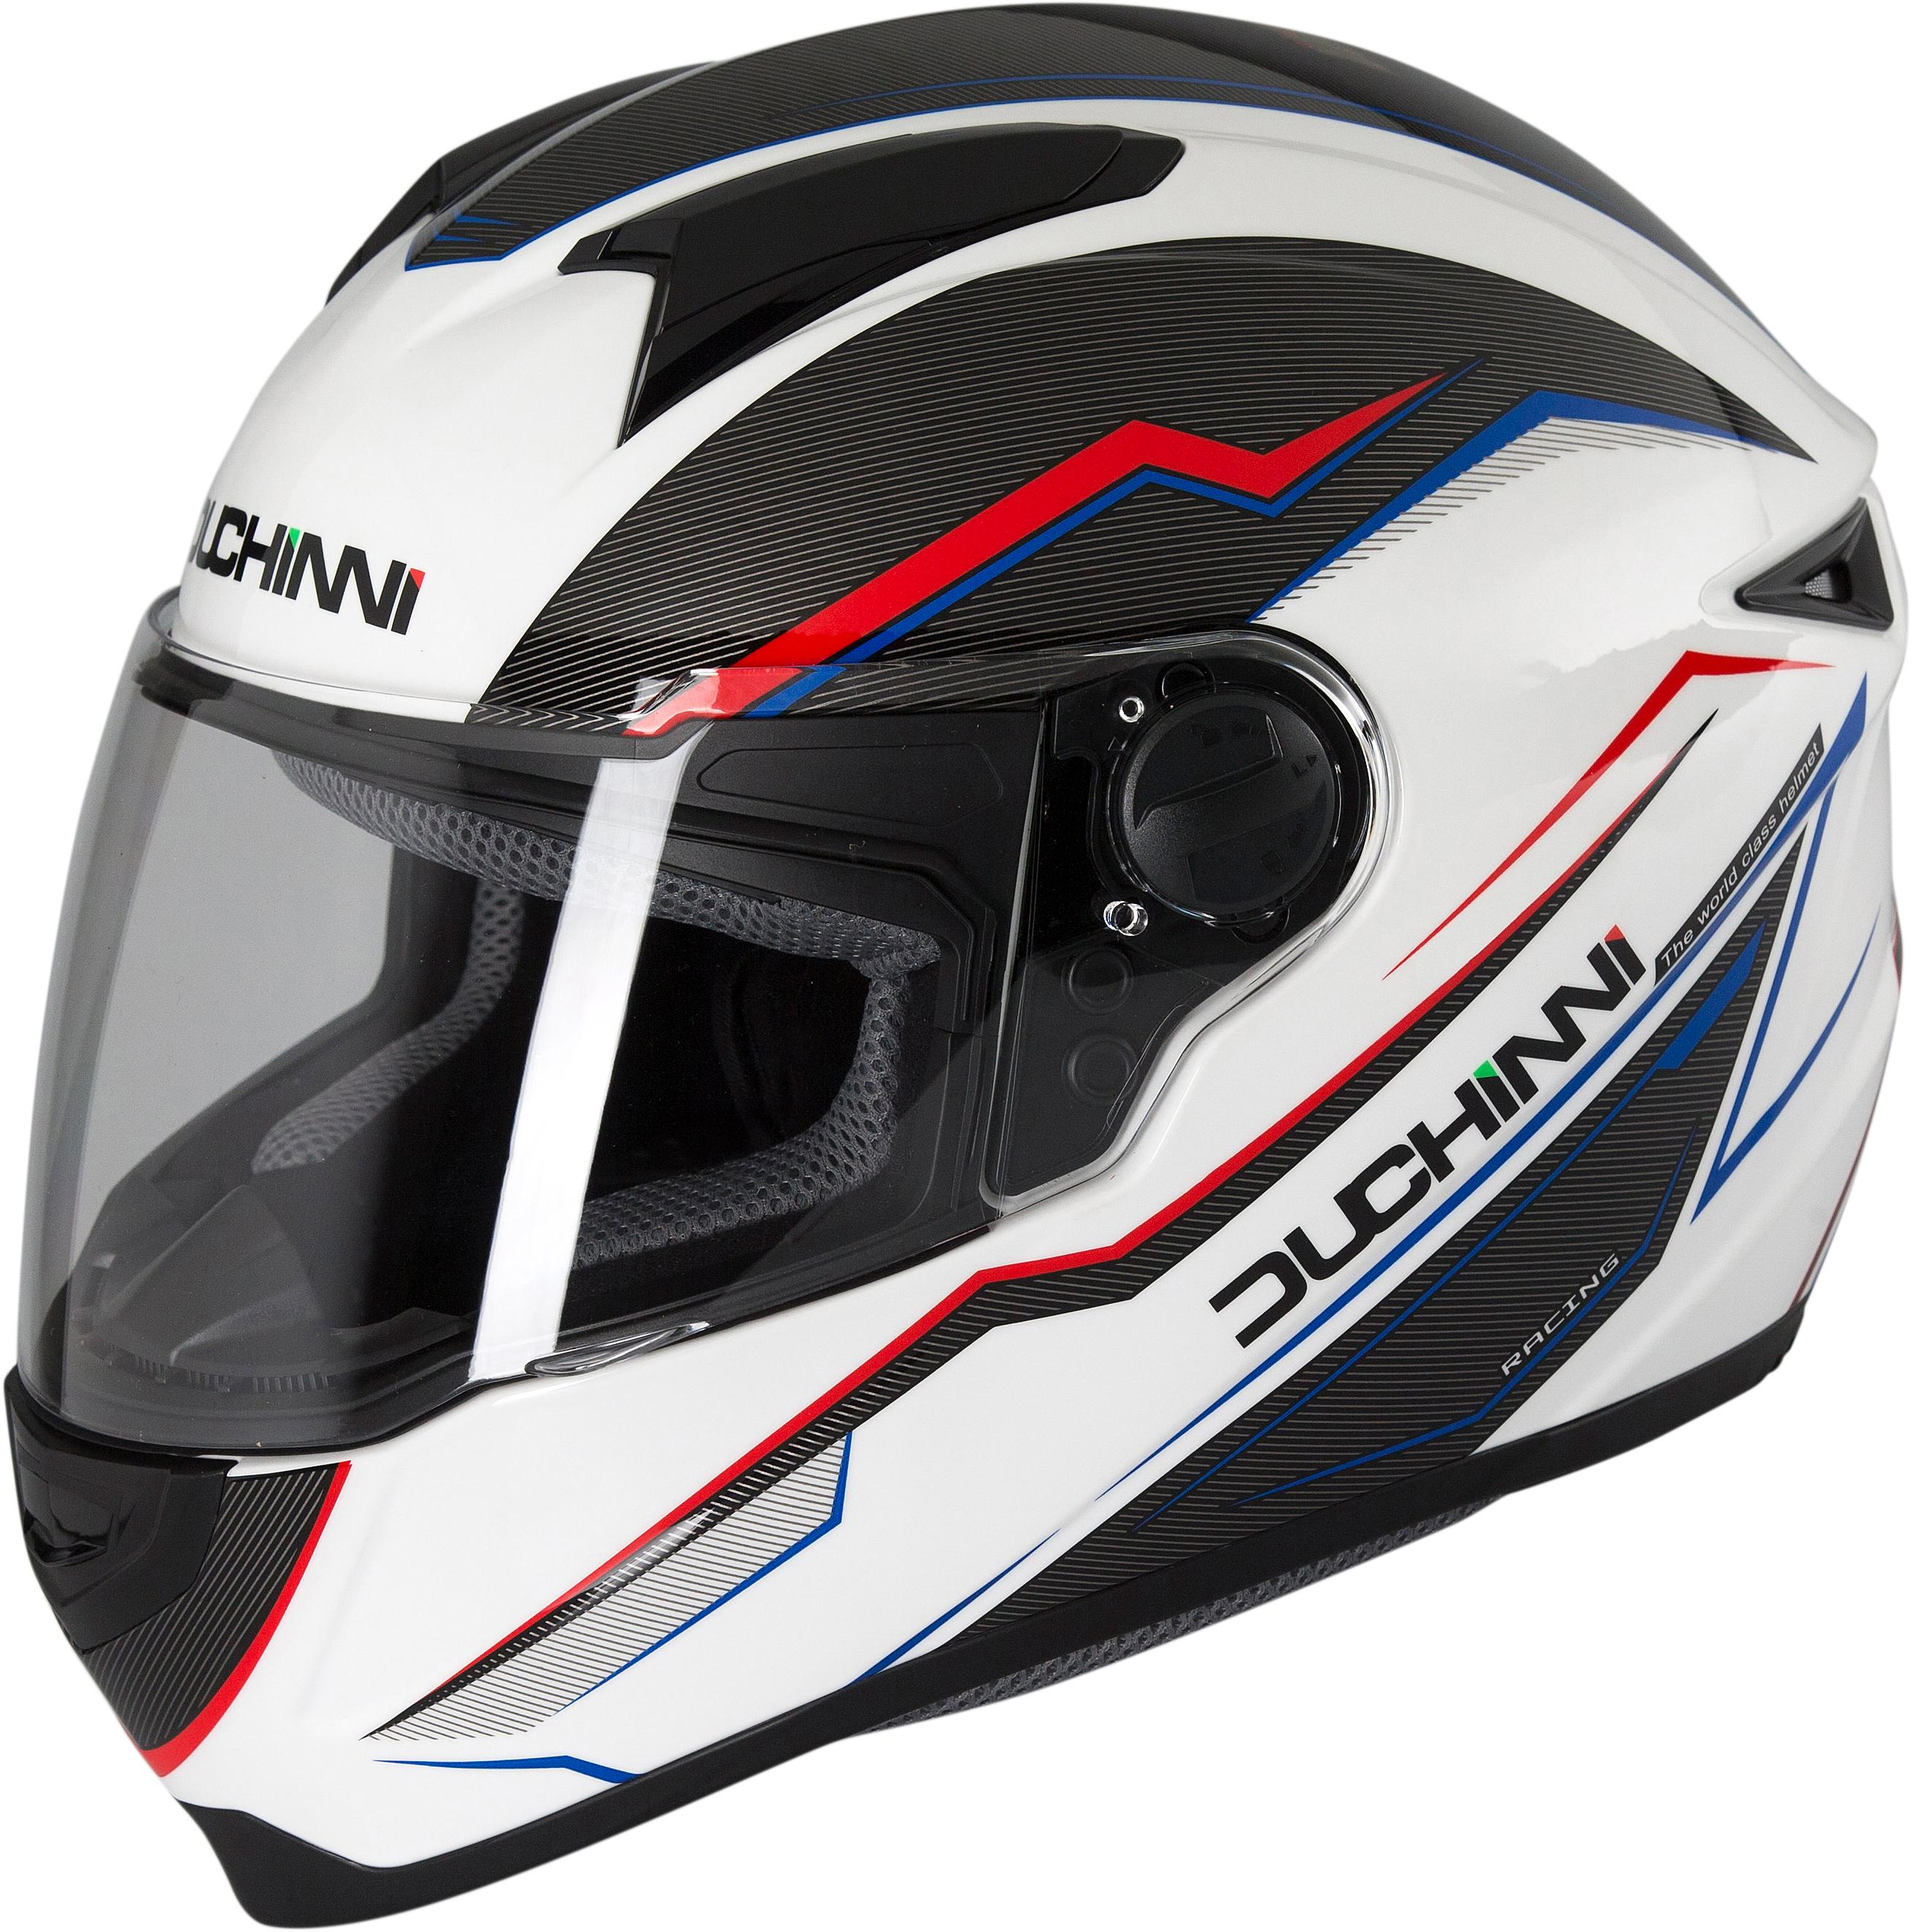 Duchinni Helmet D811 Xl, Stryder